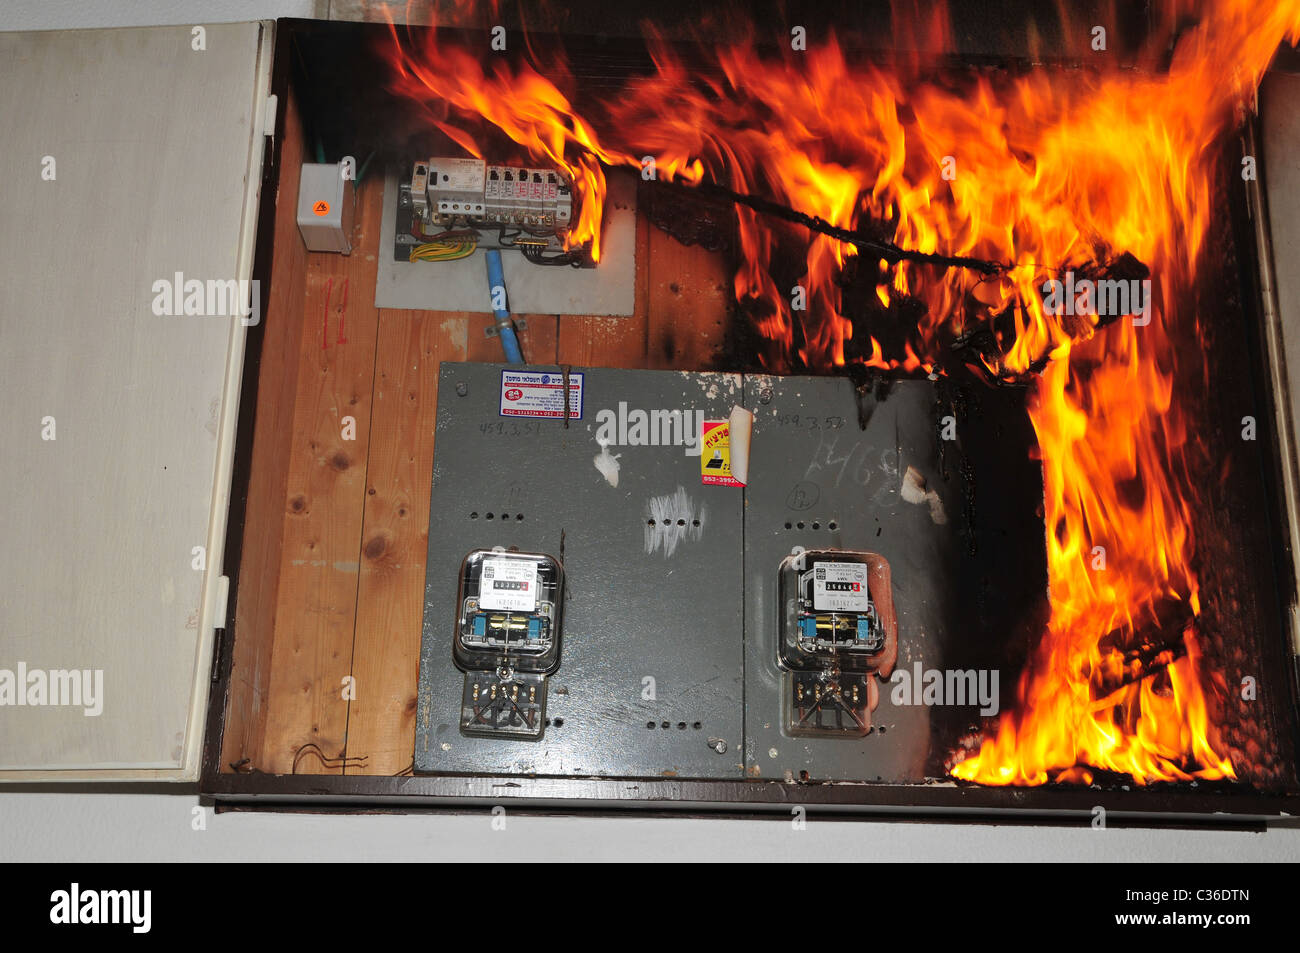 Un incendie a éclaté dans un ménage boîte à fusibles flammes consommée le conseil. Photographié en Israël Photo Stock - Alamy